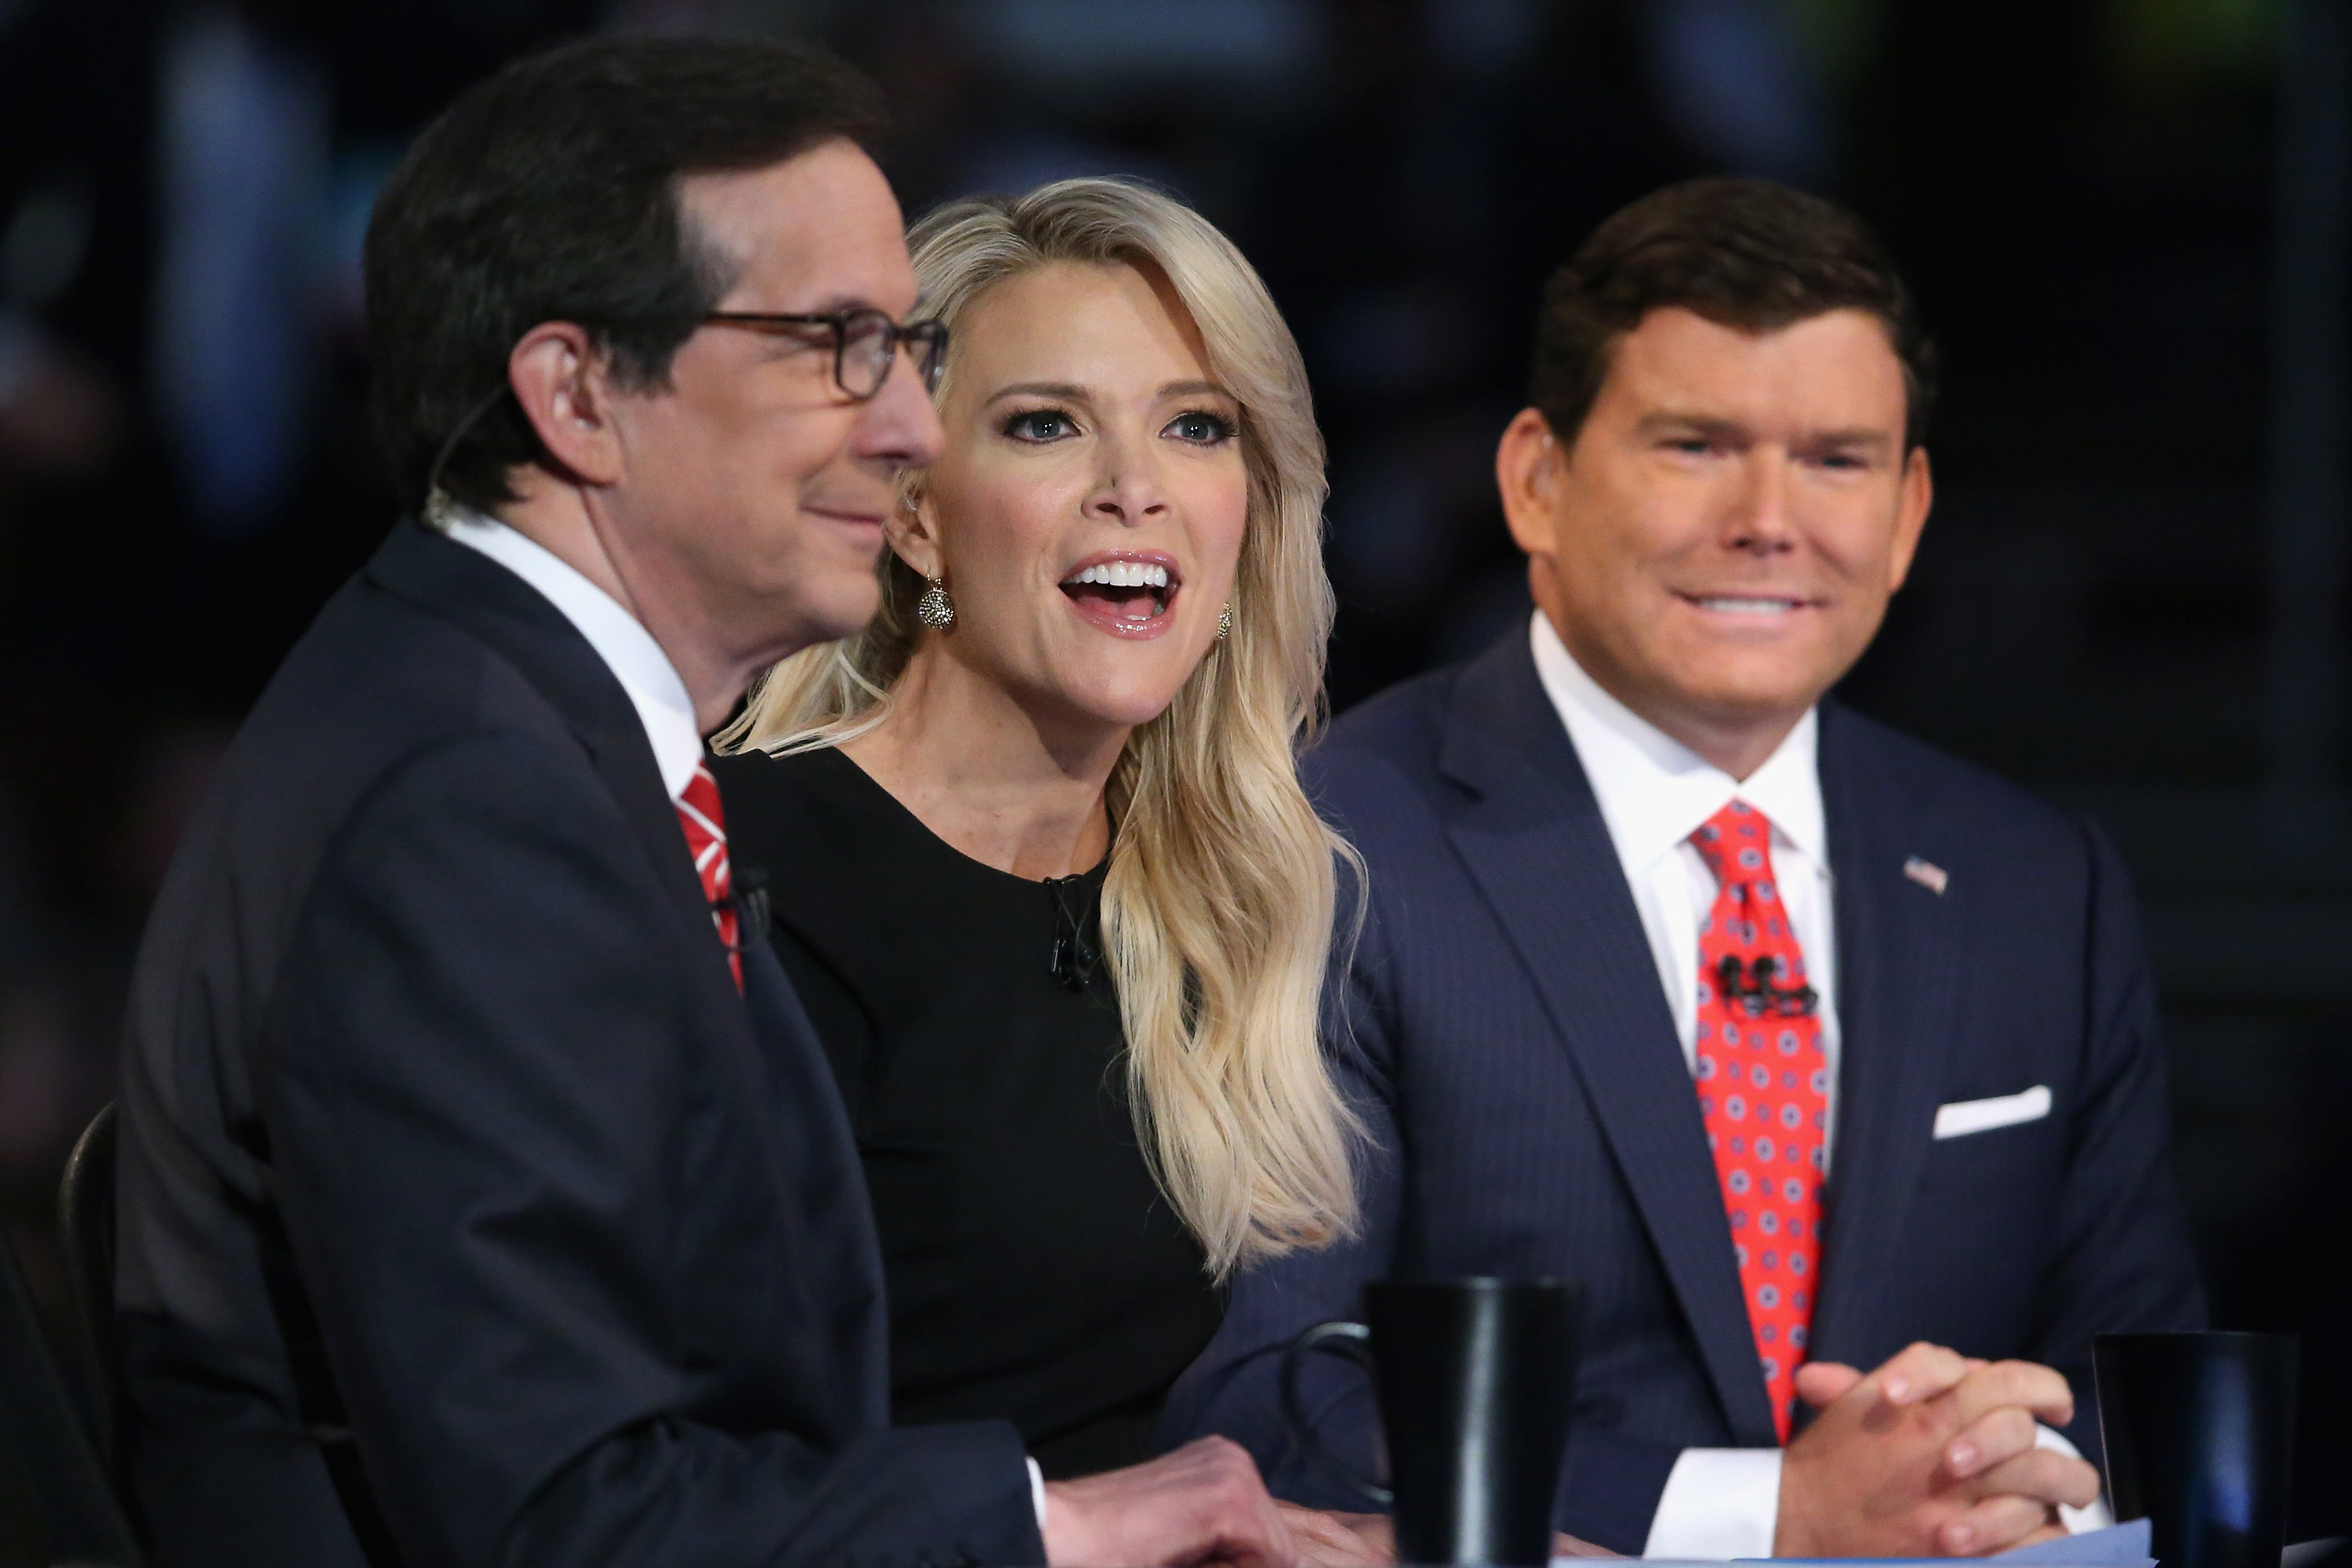 Fox News anchors moderate the first GOP debate